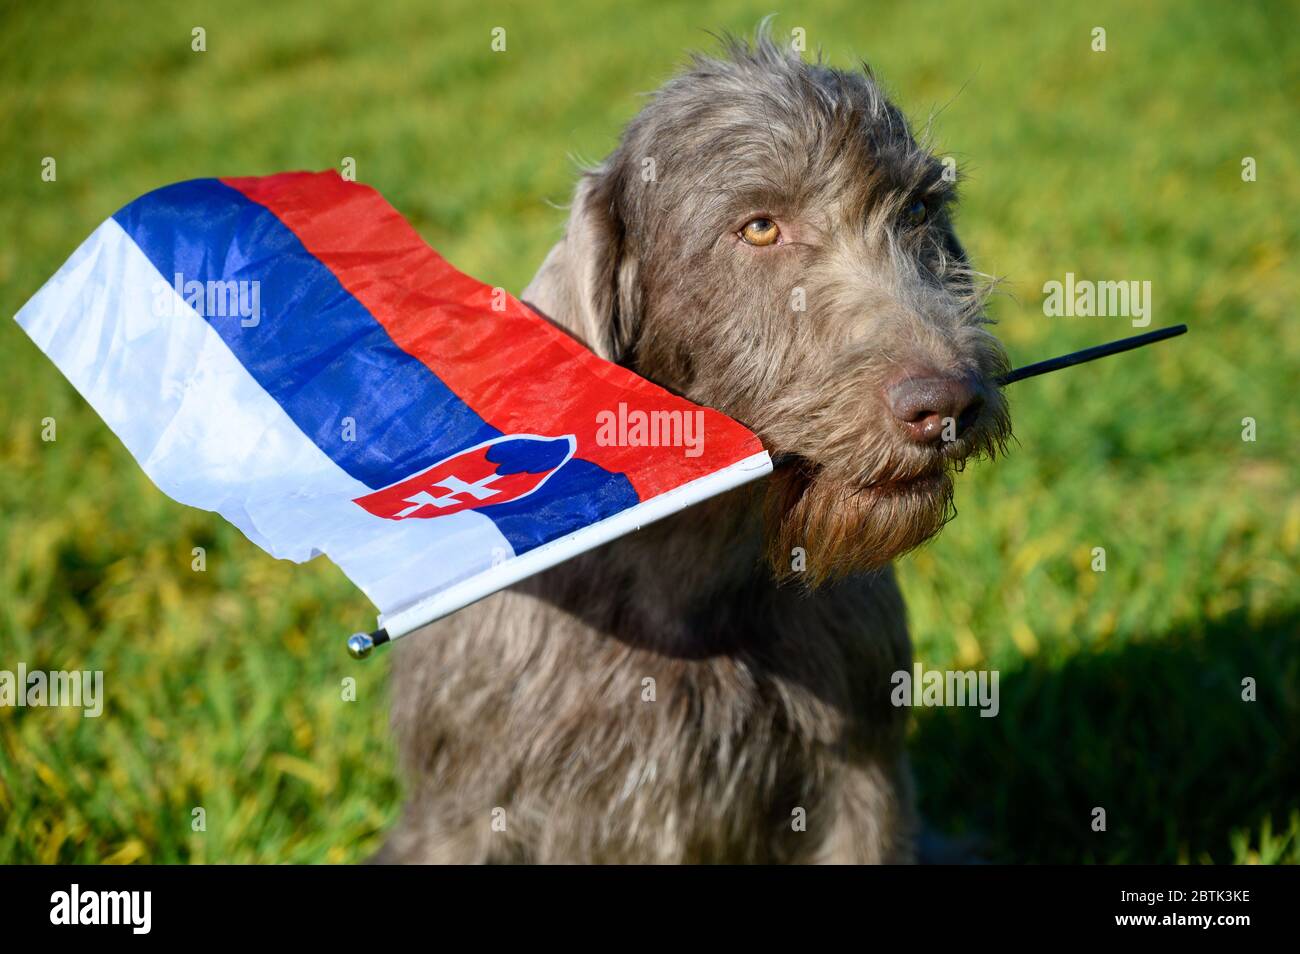 Perro de pelo gris en la hierba que sostiene la bandera eslovaca. El perro  es de la raza: Eslovacos de pelo áspero puntero o eslovacos de pelo pelado  Griffon apuntando Fotografía de